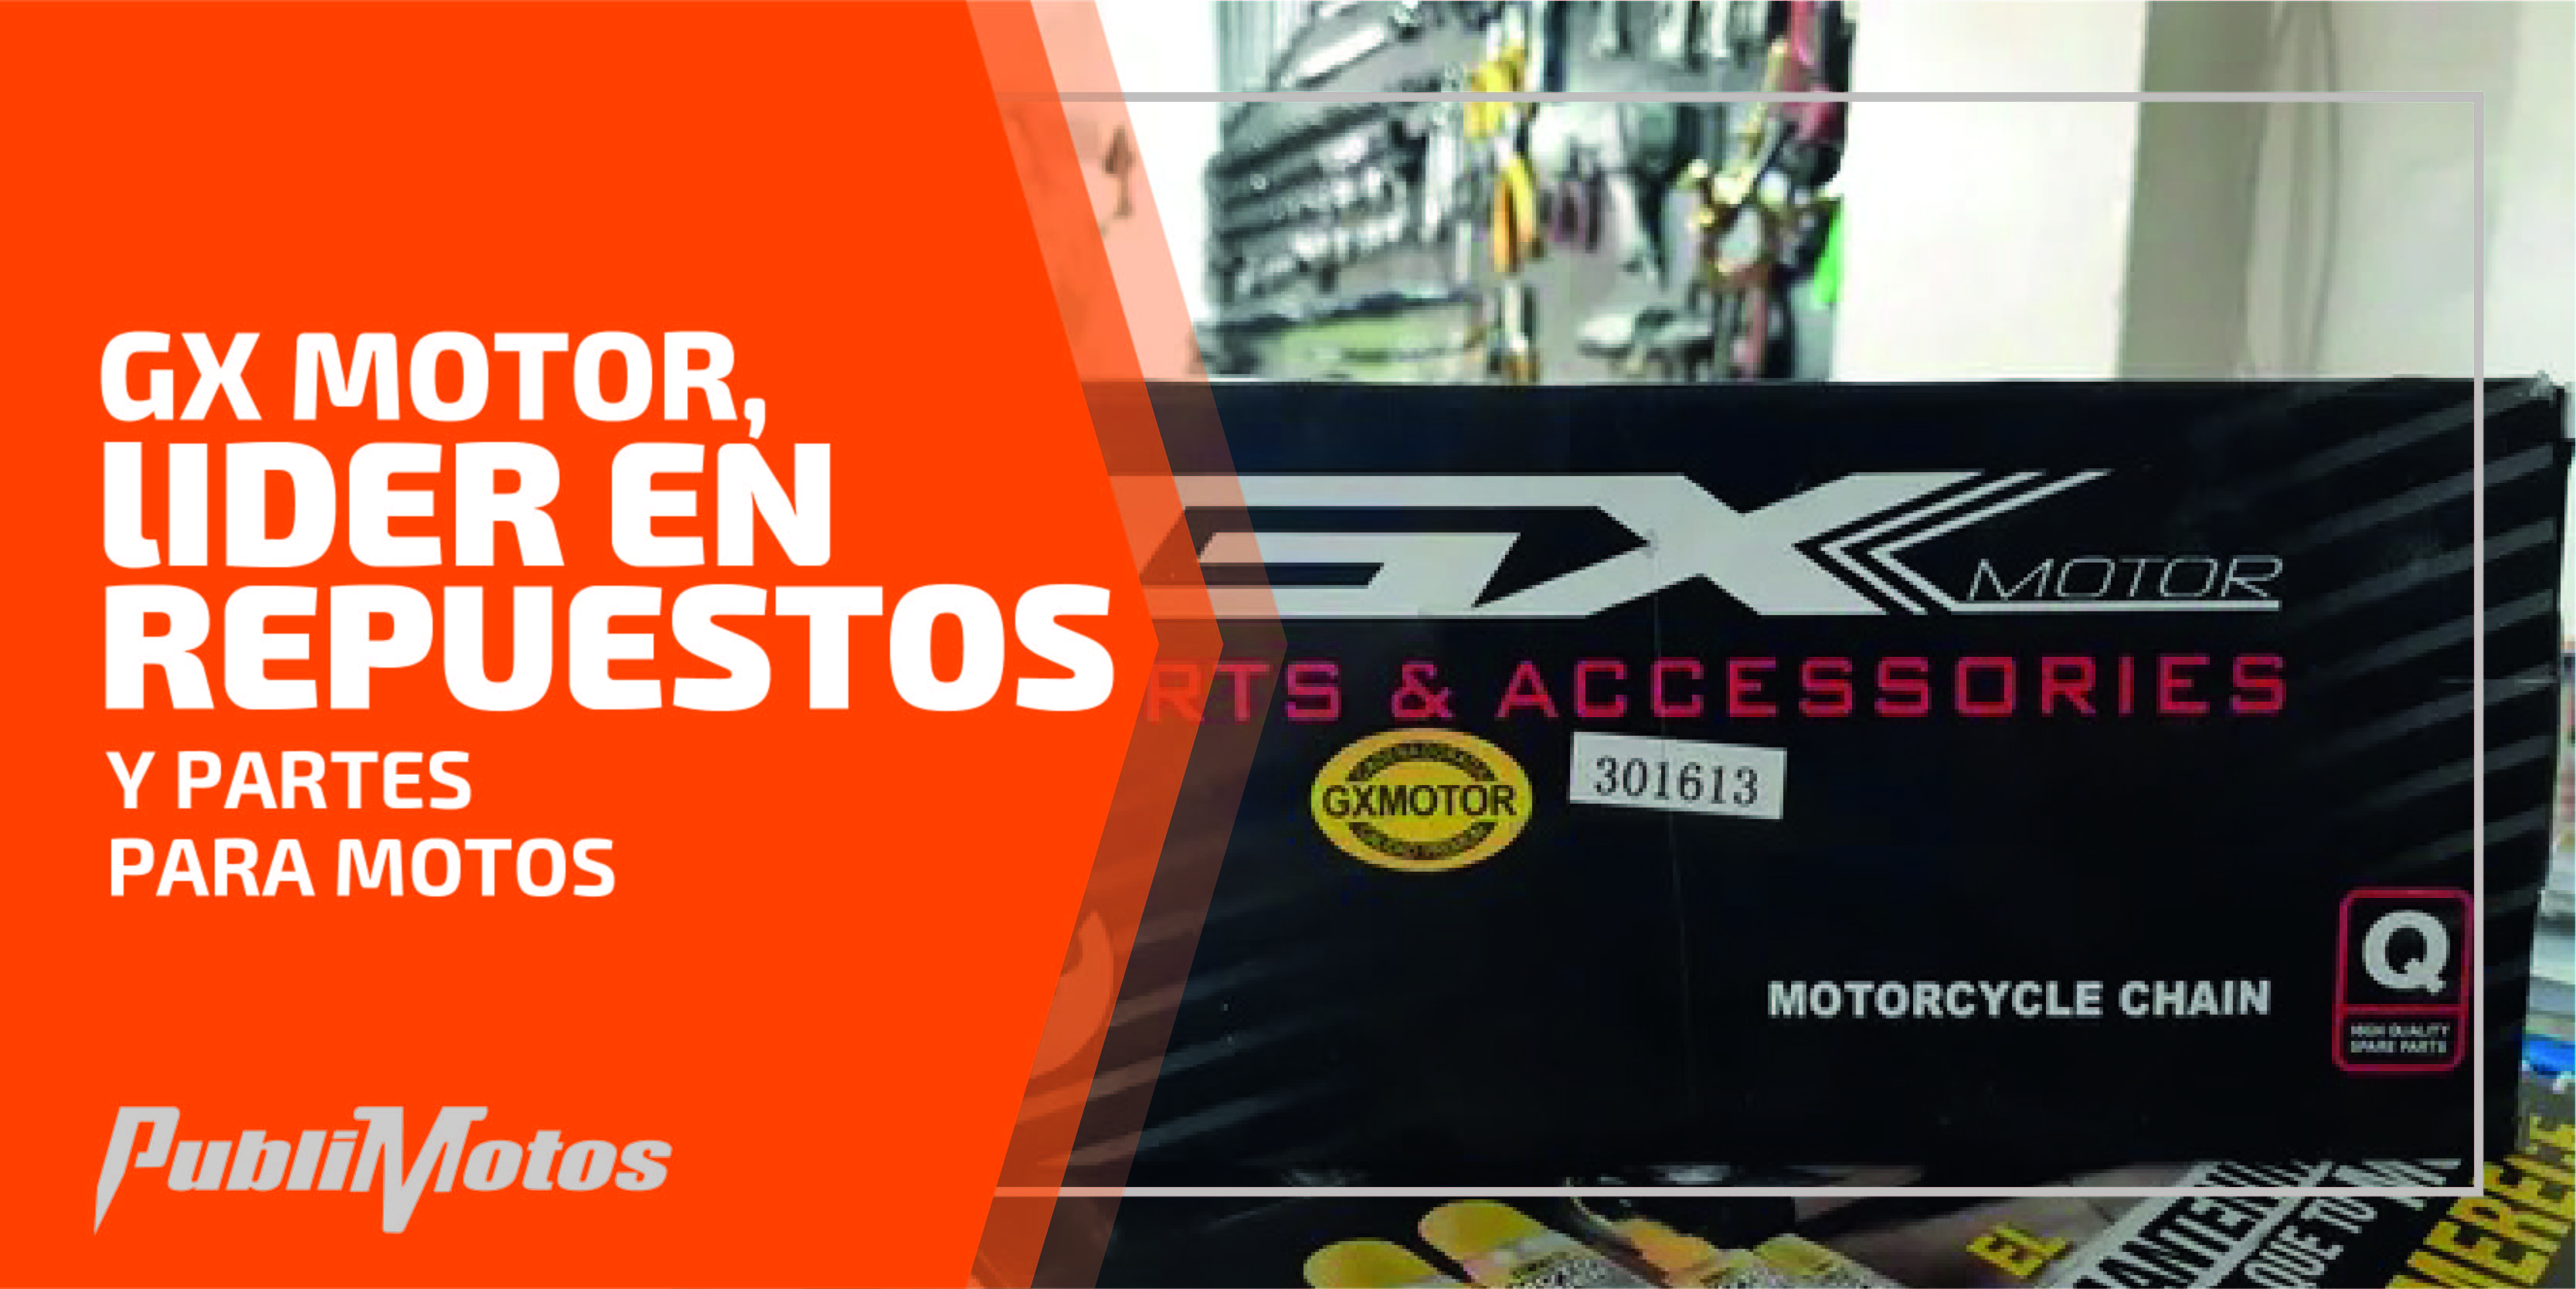 GX Motor, la marca más completa en partes y accesorios para tu moto